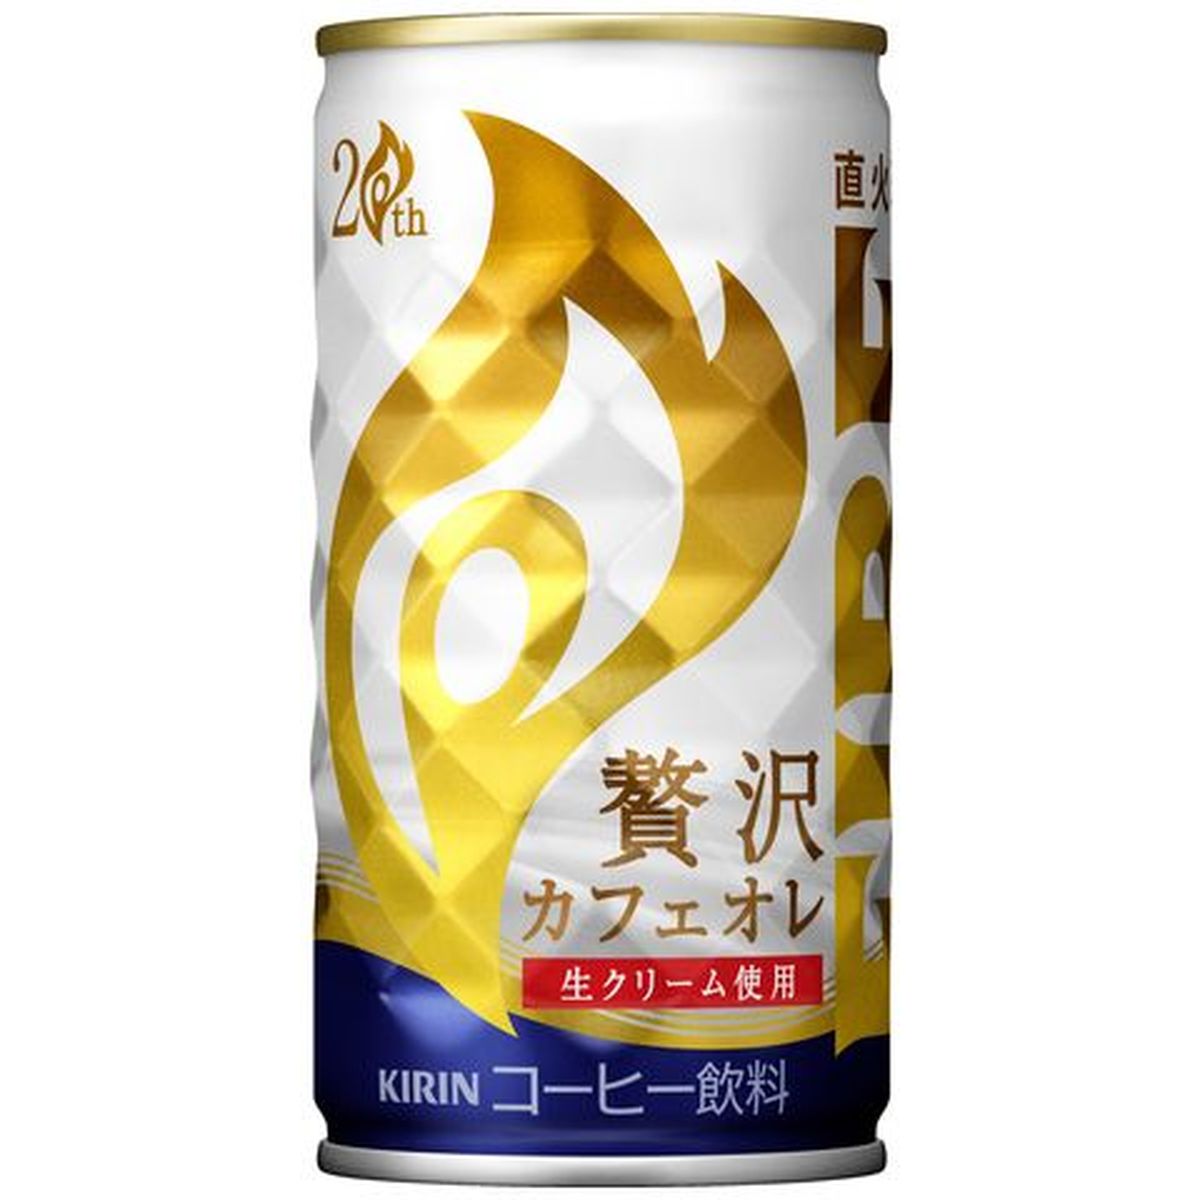 【30個入リ】キリン ファイア 贅沢カフェオレ 缶 185g